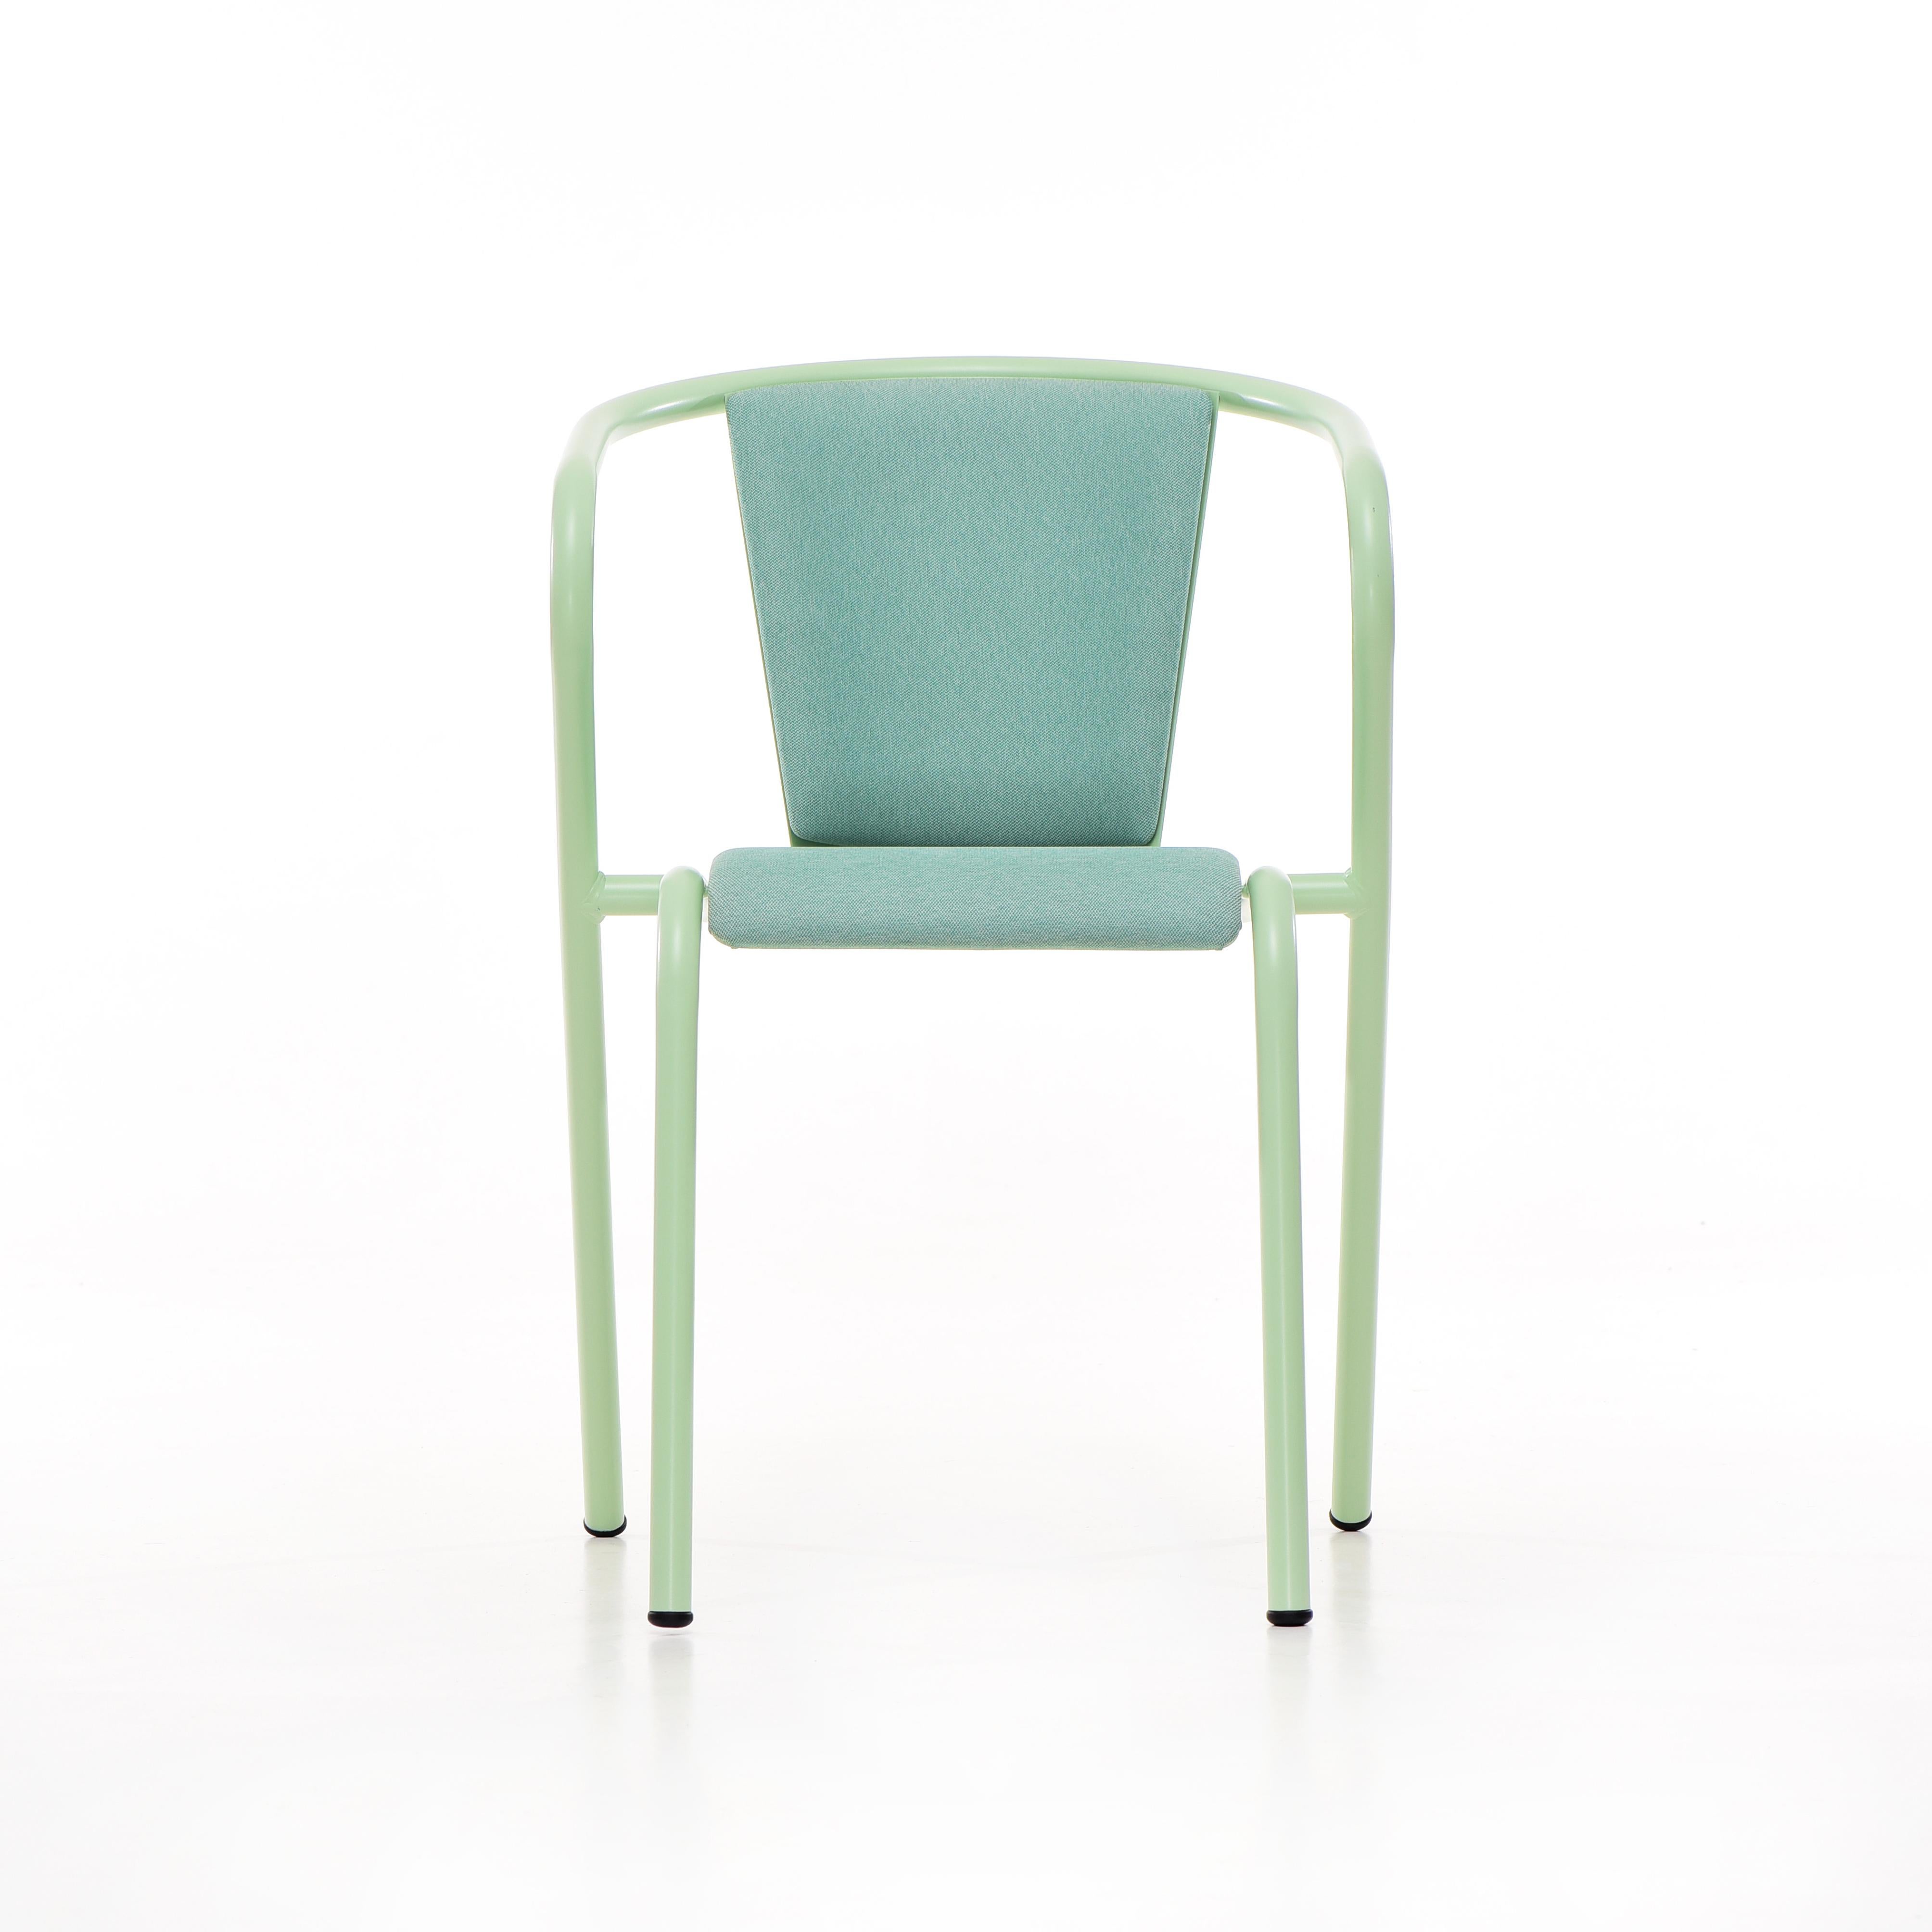 BICAchair est un fauteuil de salle à manger empilable en acier recyclé et recyclable, fini avec notre sélection de couleurs de revêtement en poudre, dans ce cas dans une couleur vert pastel, qui transforme un classique en quelque chose de nouveau et